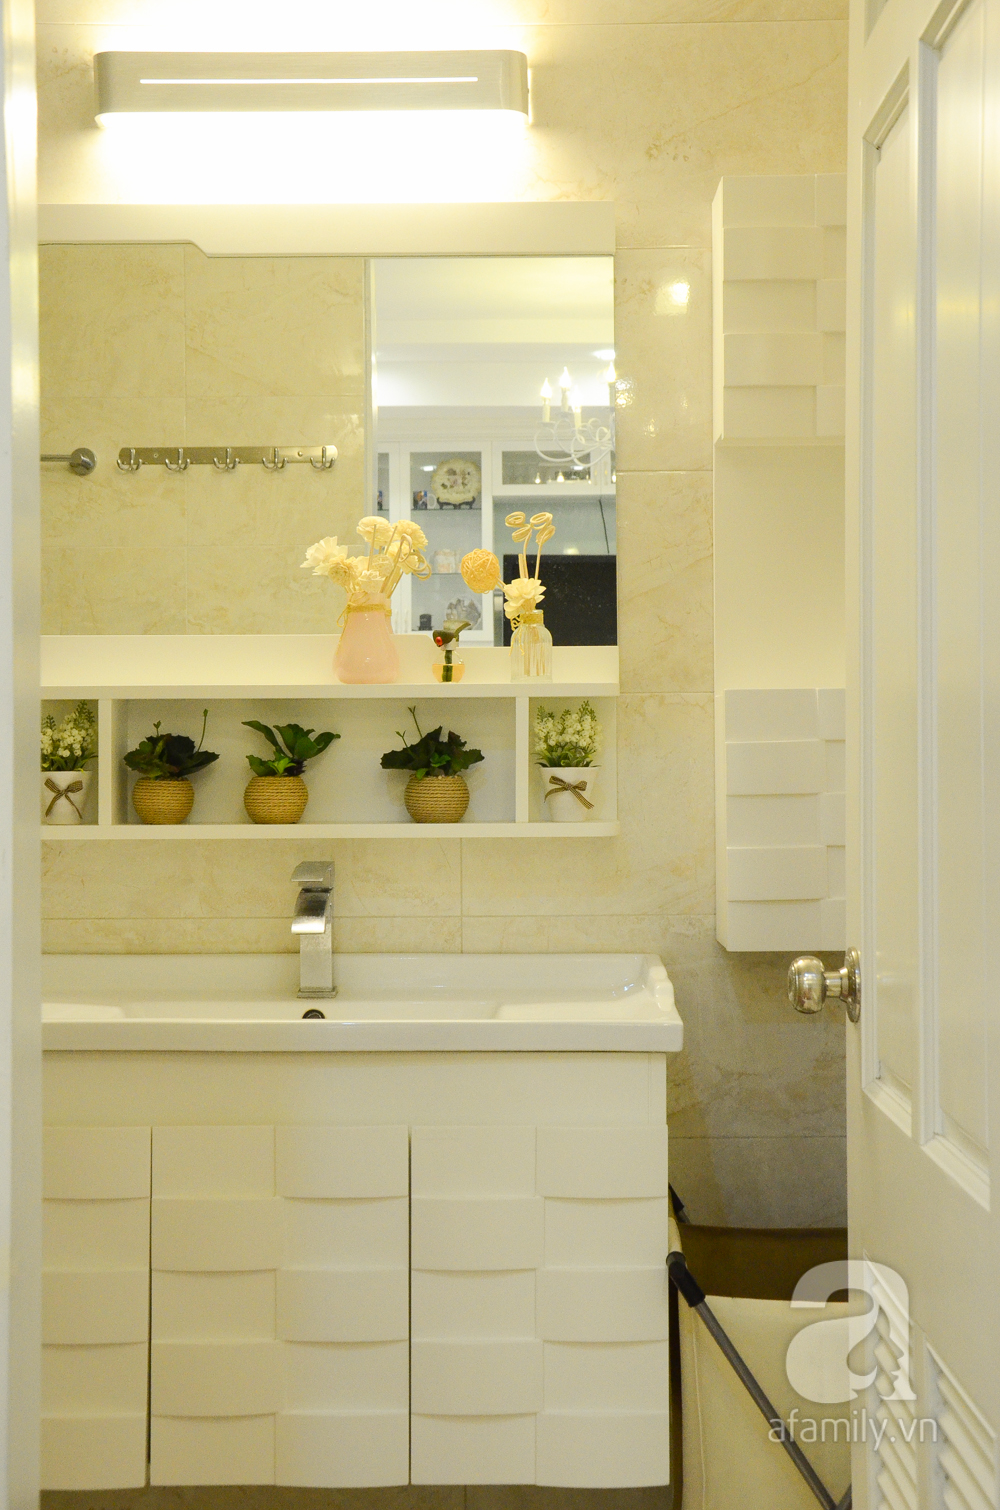 Nhà vệ sinh tone màu trắng sáng, sạch sẽ với nội thất đầy đủ tiện nghi